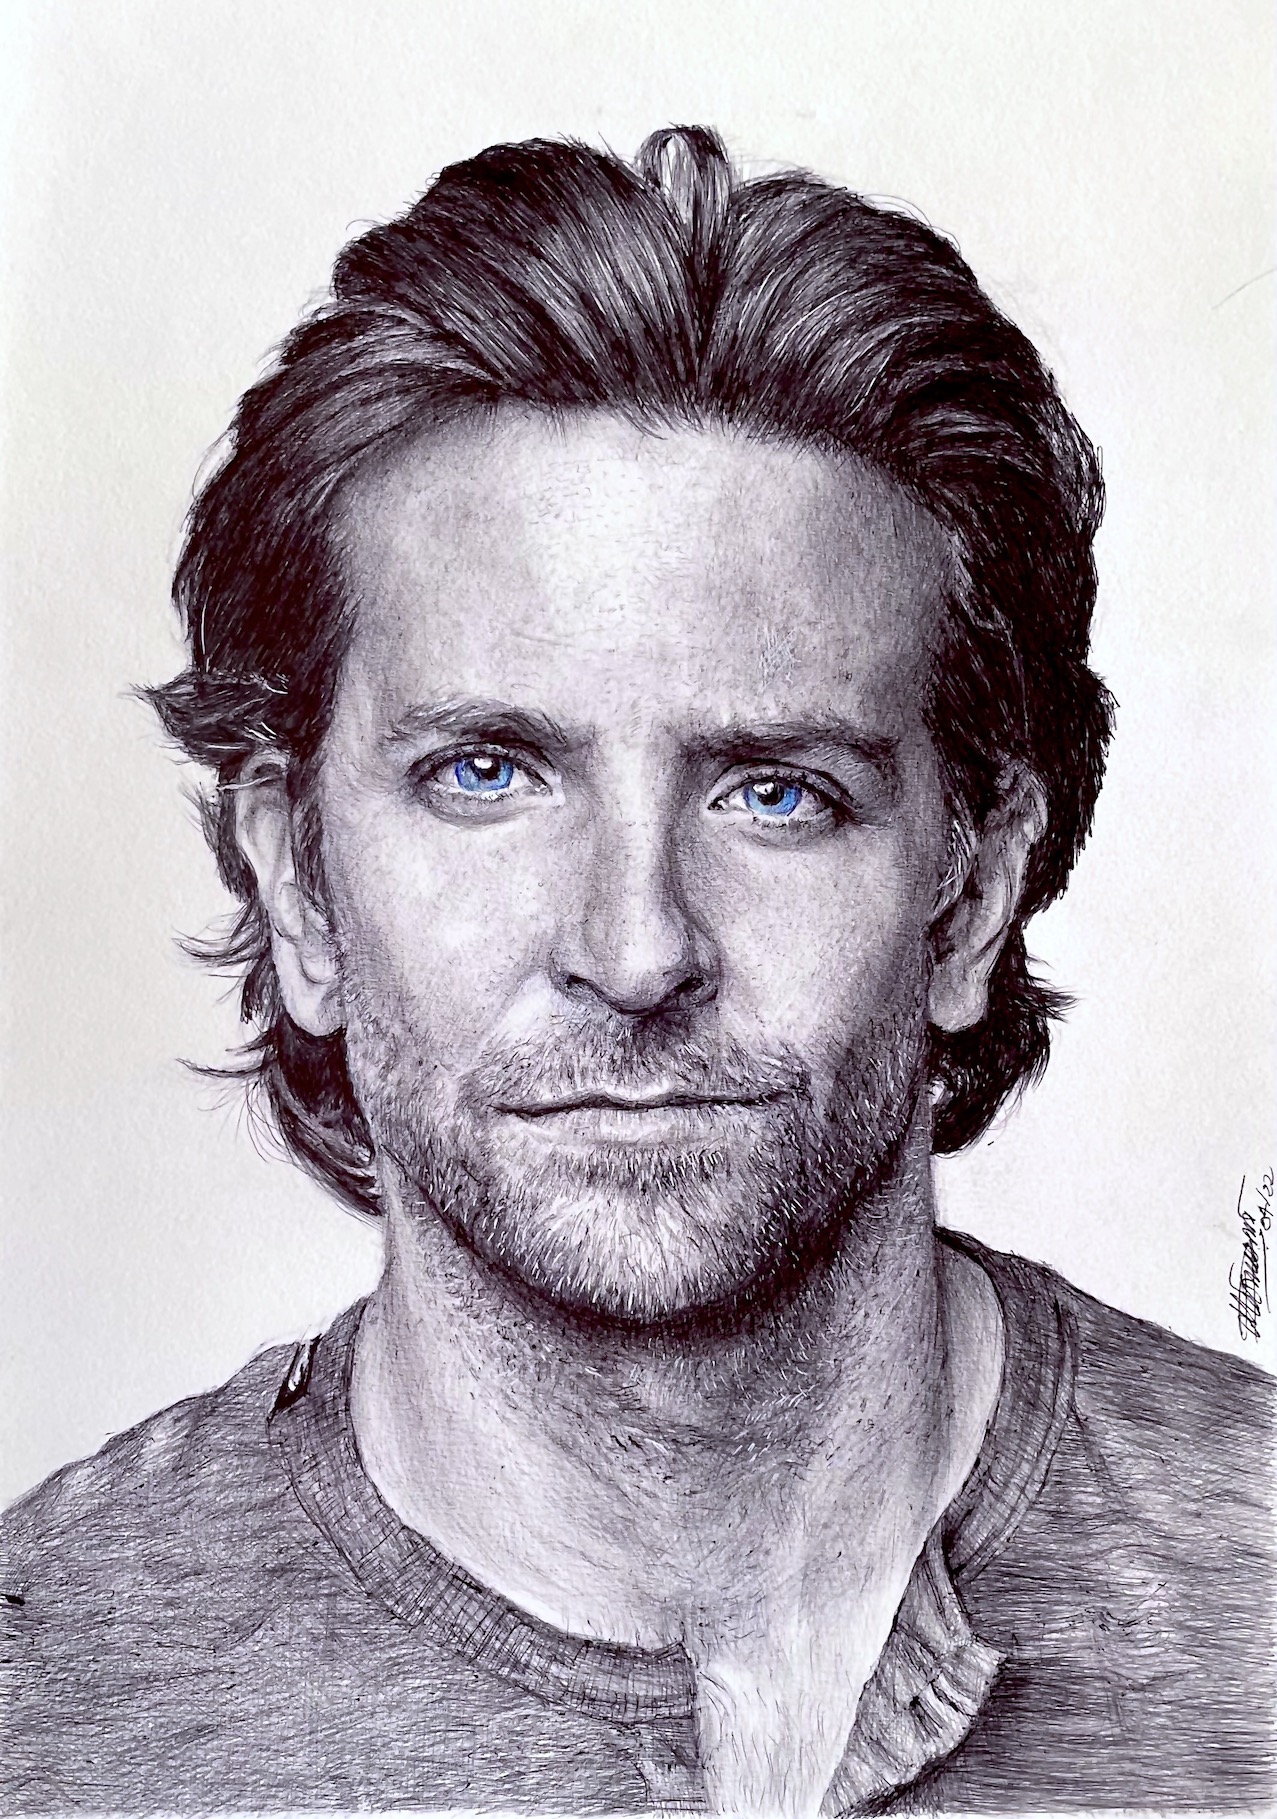 Bradley Cooper Blue Eyes Wallpapers